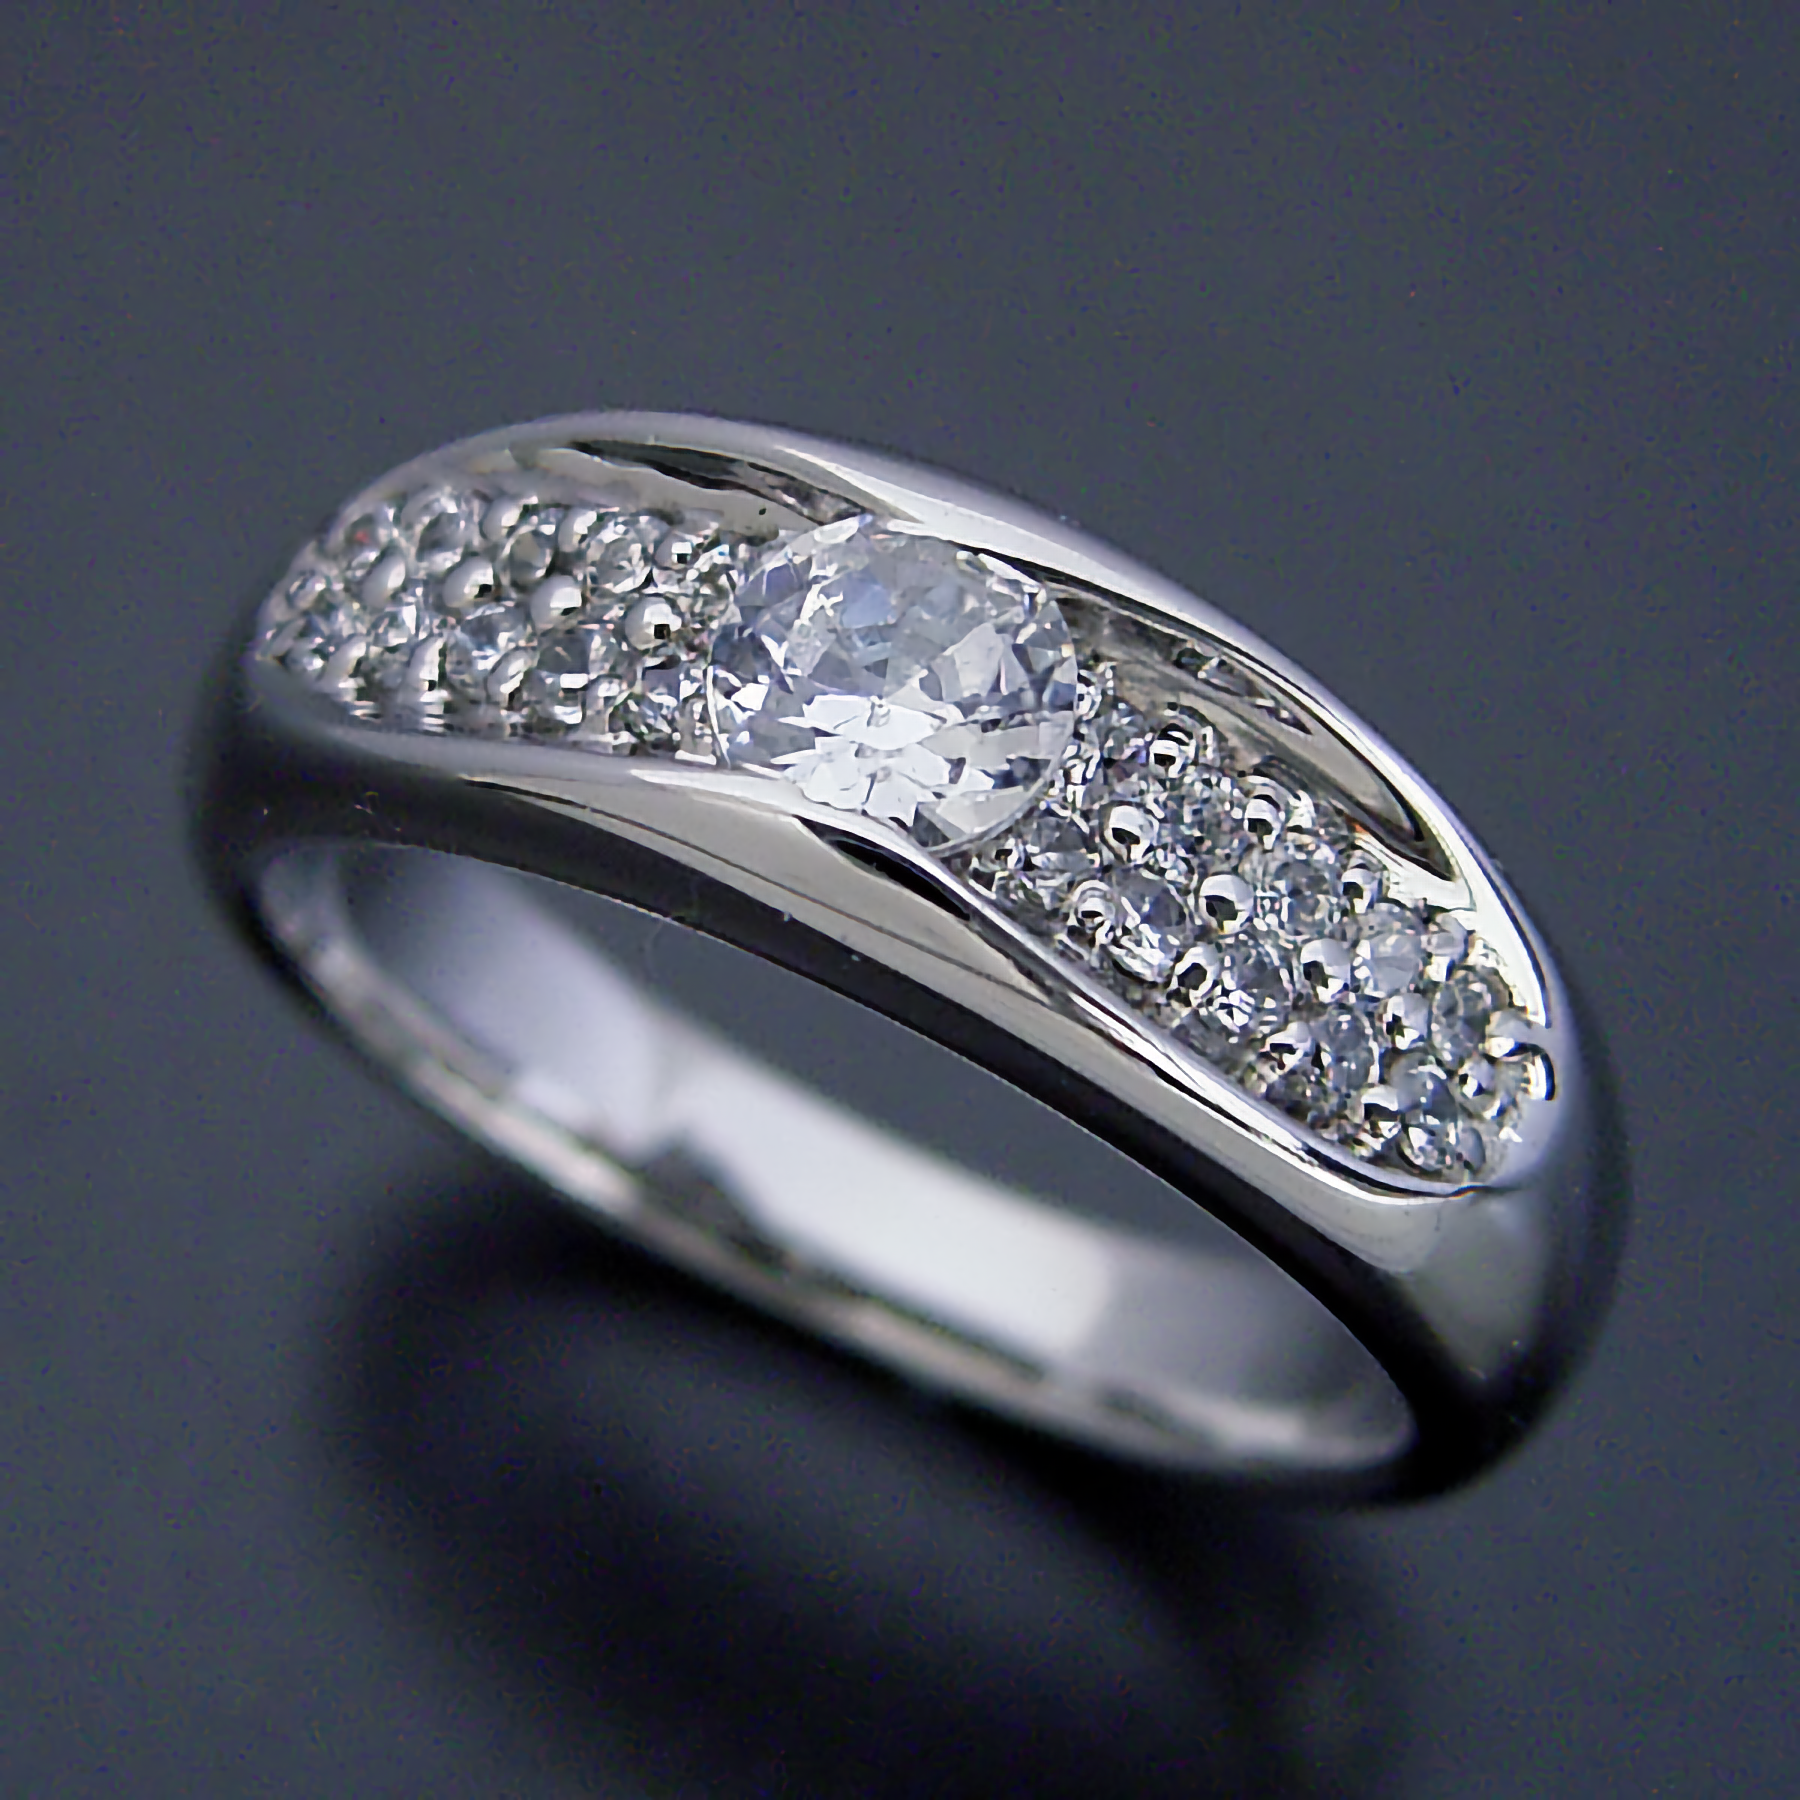 ブリリアントジュエリーに婚約指輪を購入したお客様の声を追加しました。